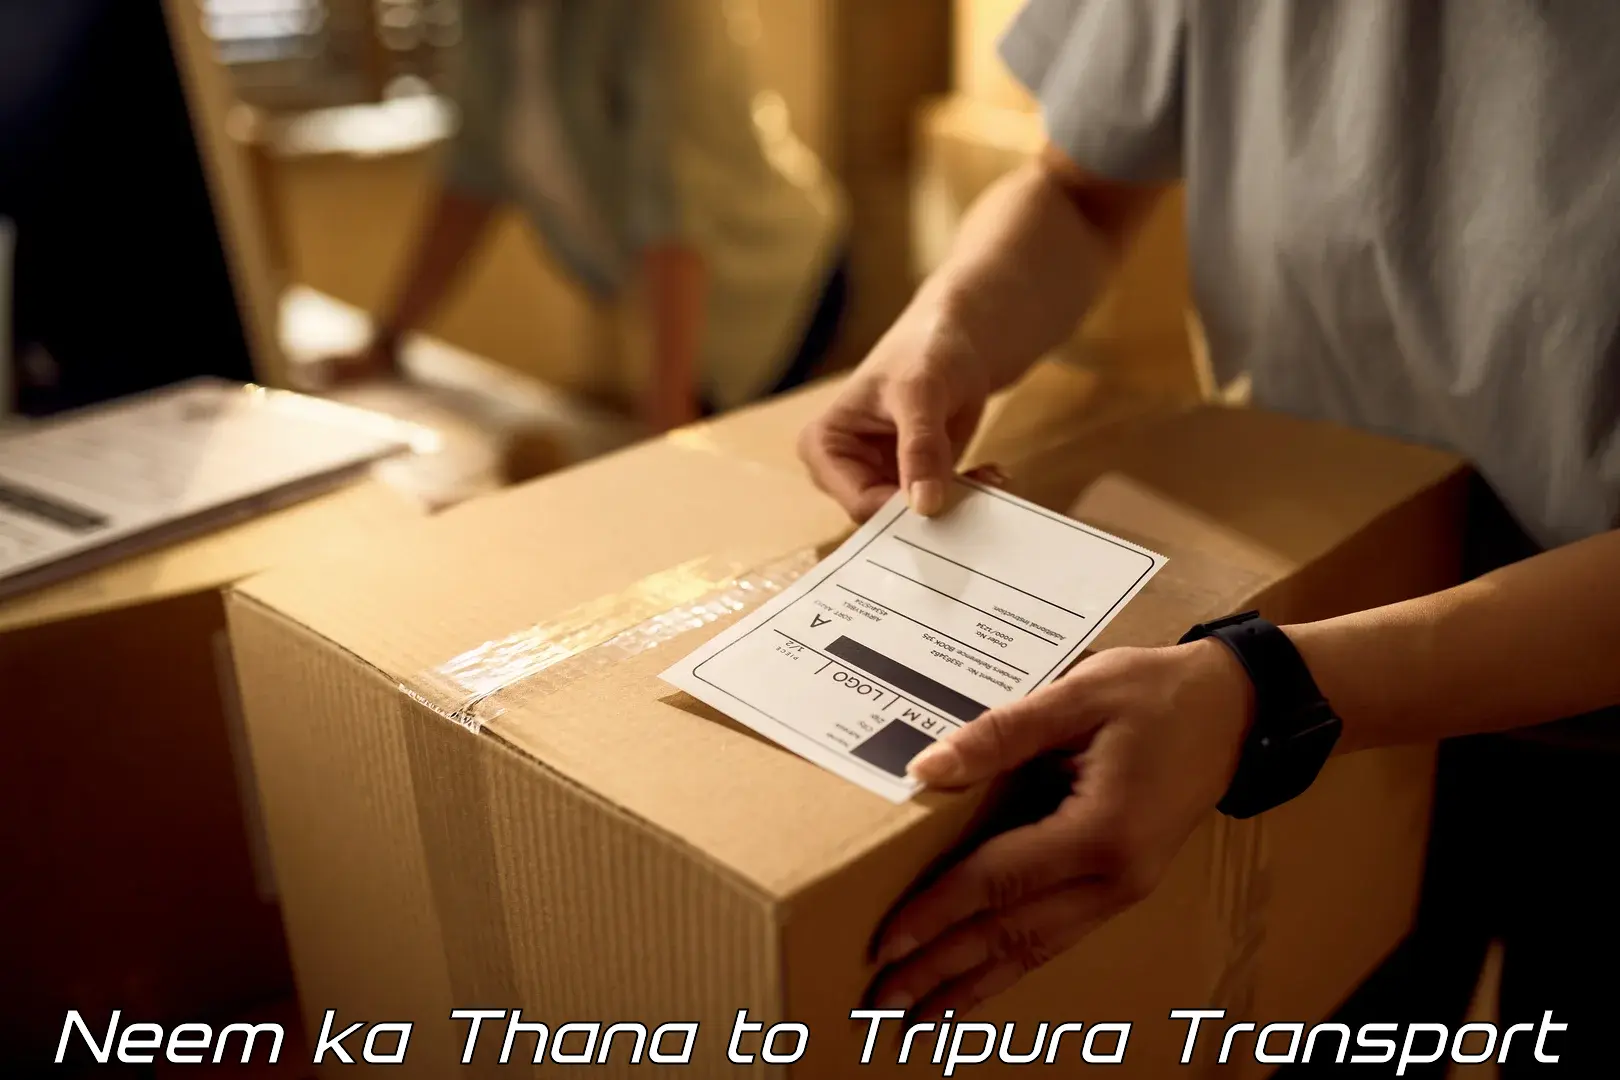 All India transport service Neem ka Thana to Kailashahar